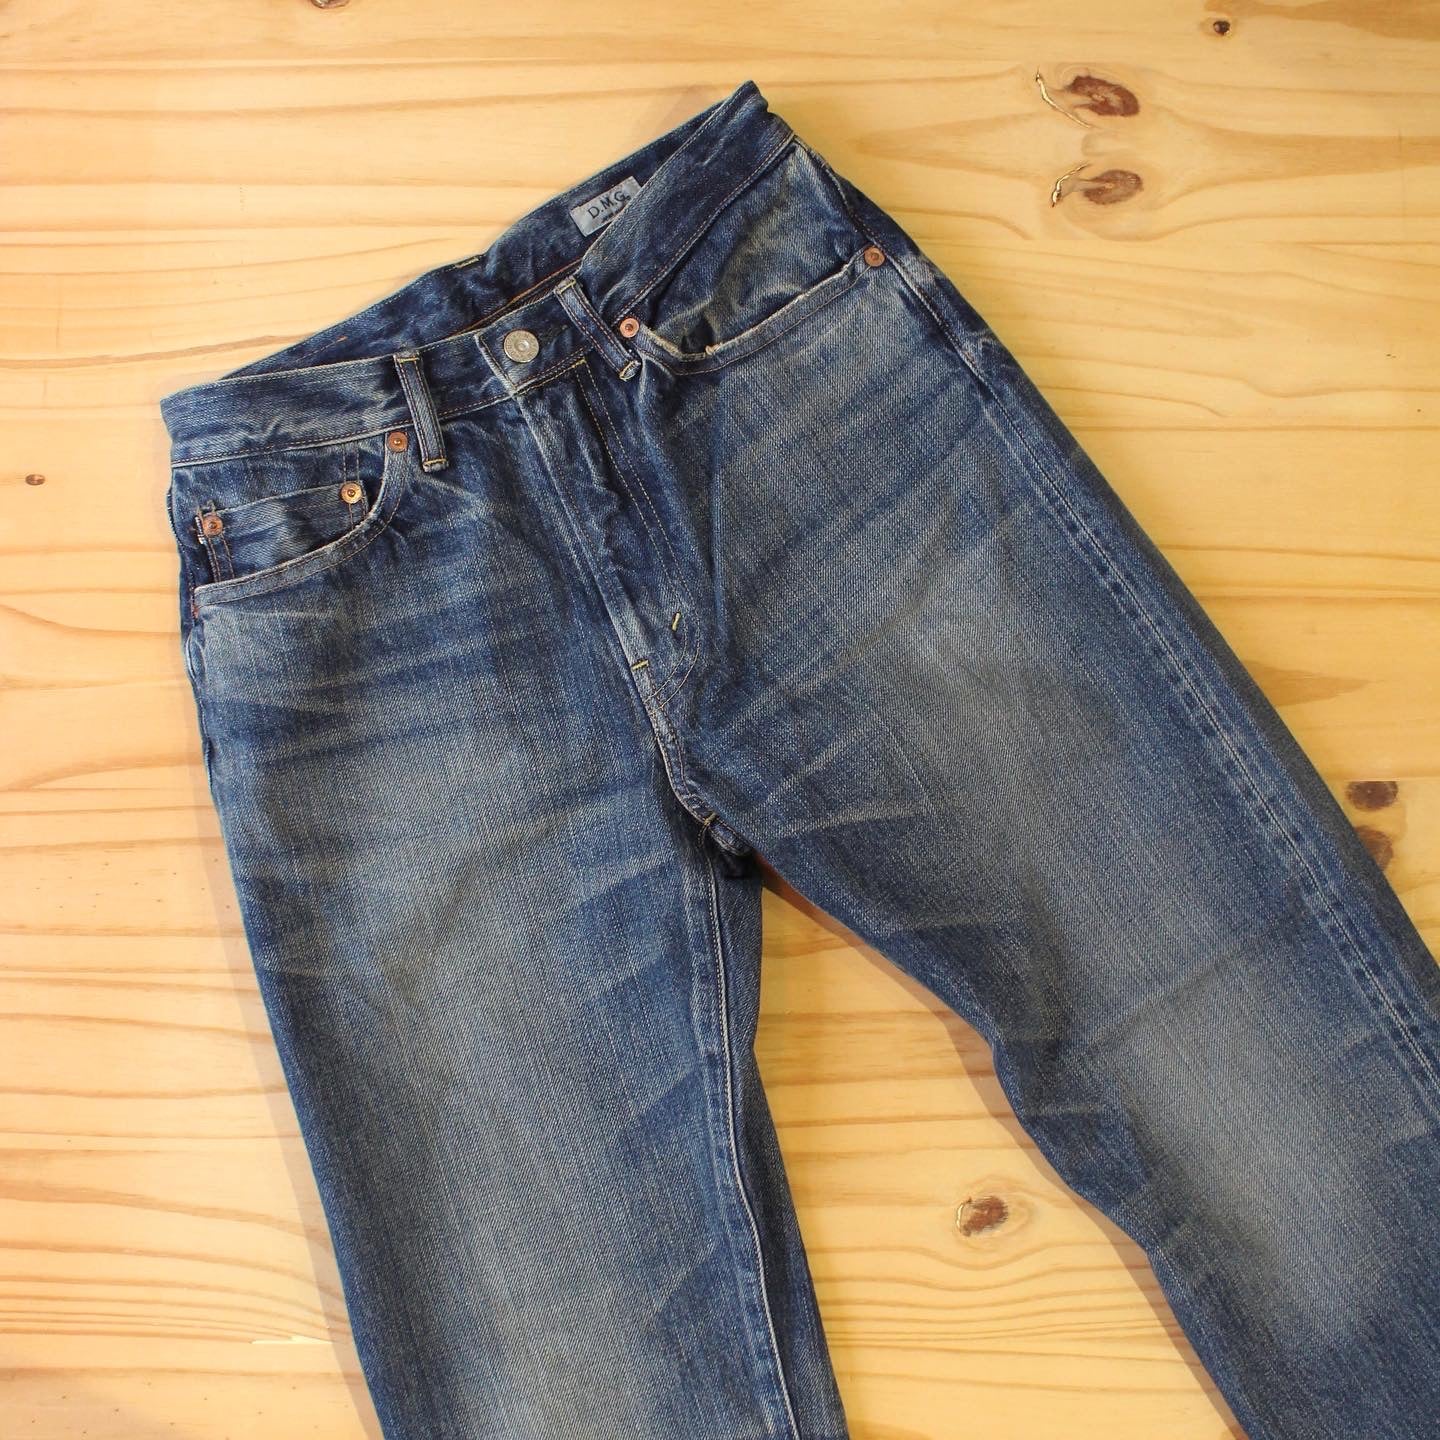 D.M.G - Standard Design 13.5OZ Basic Jeans(Used Wash)